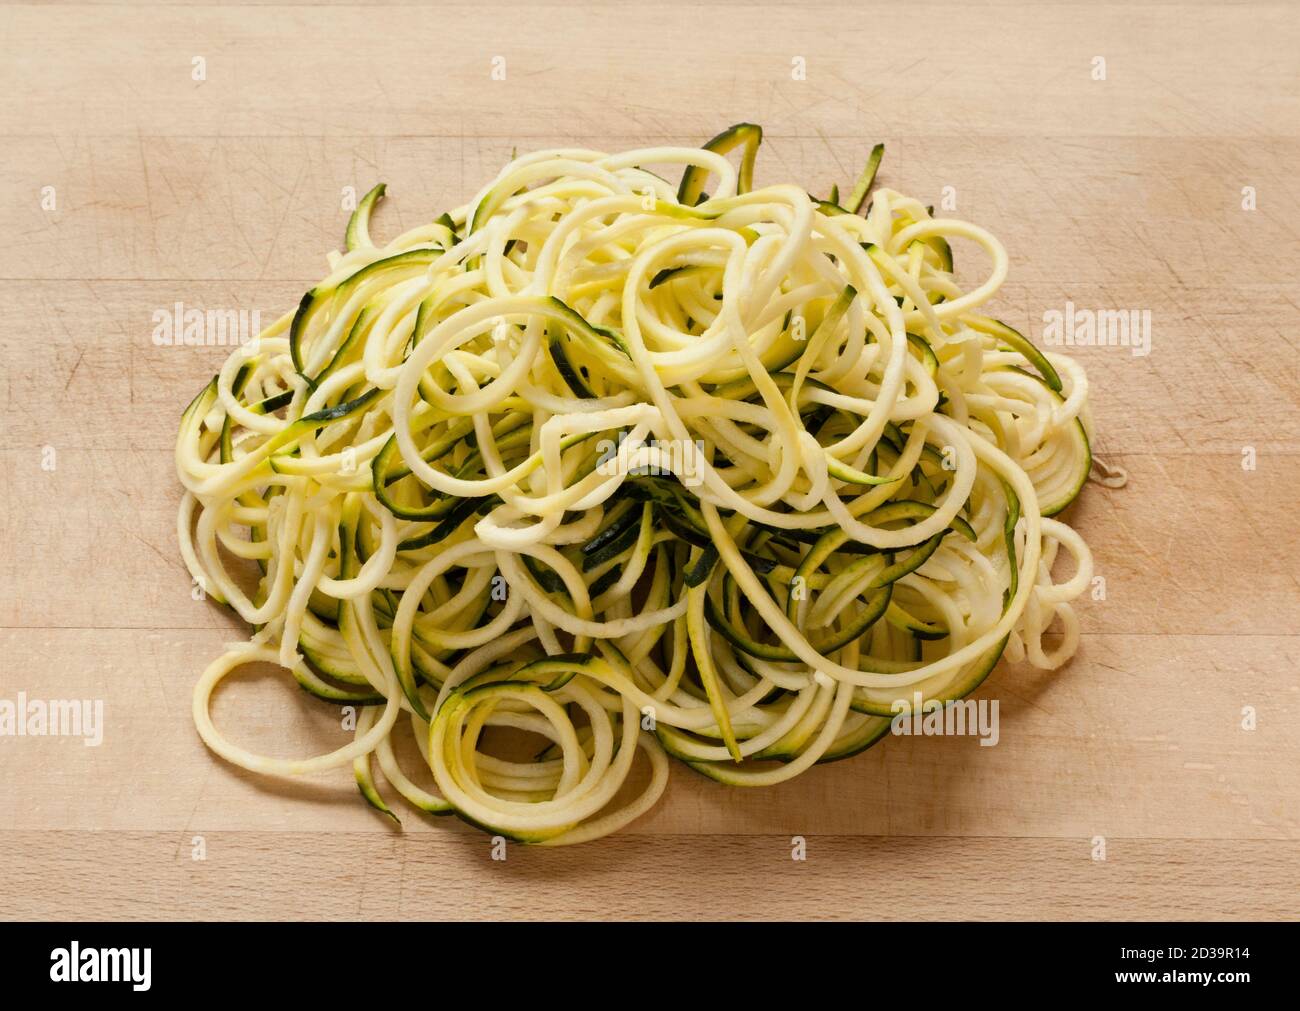 Courgette spaghetti Stock Photo